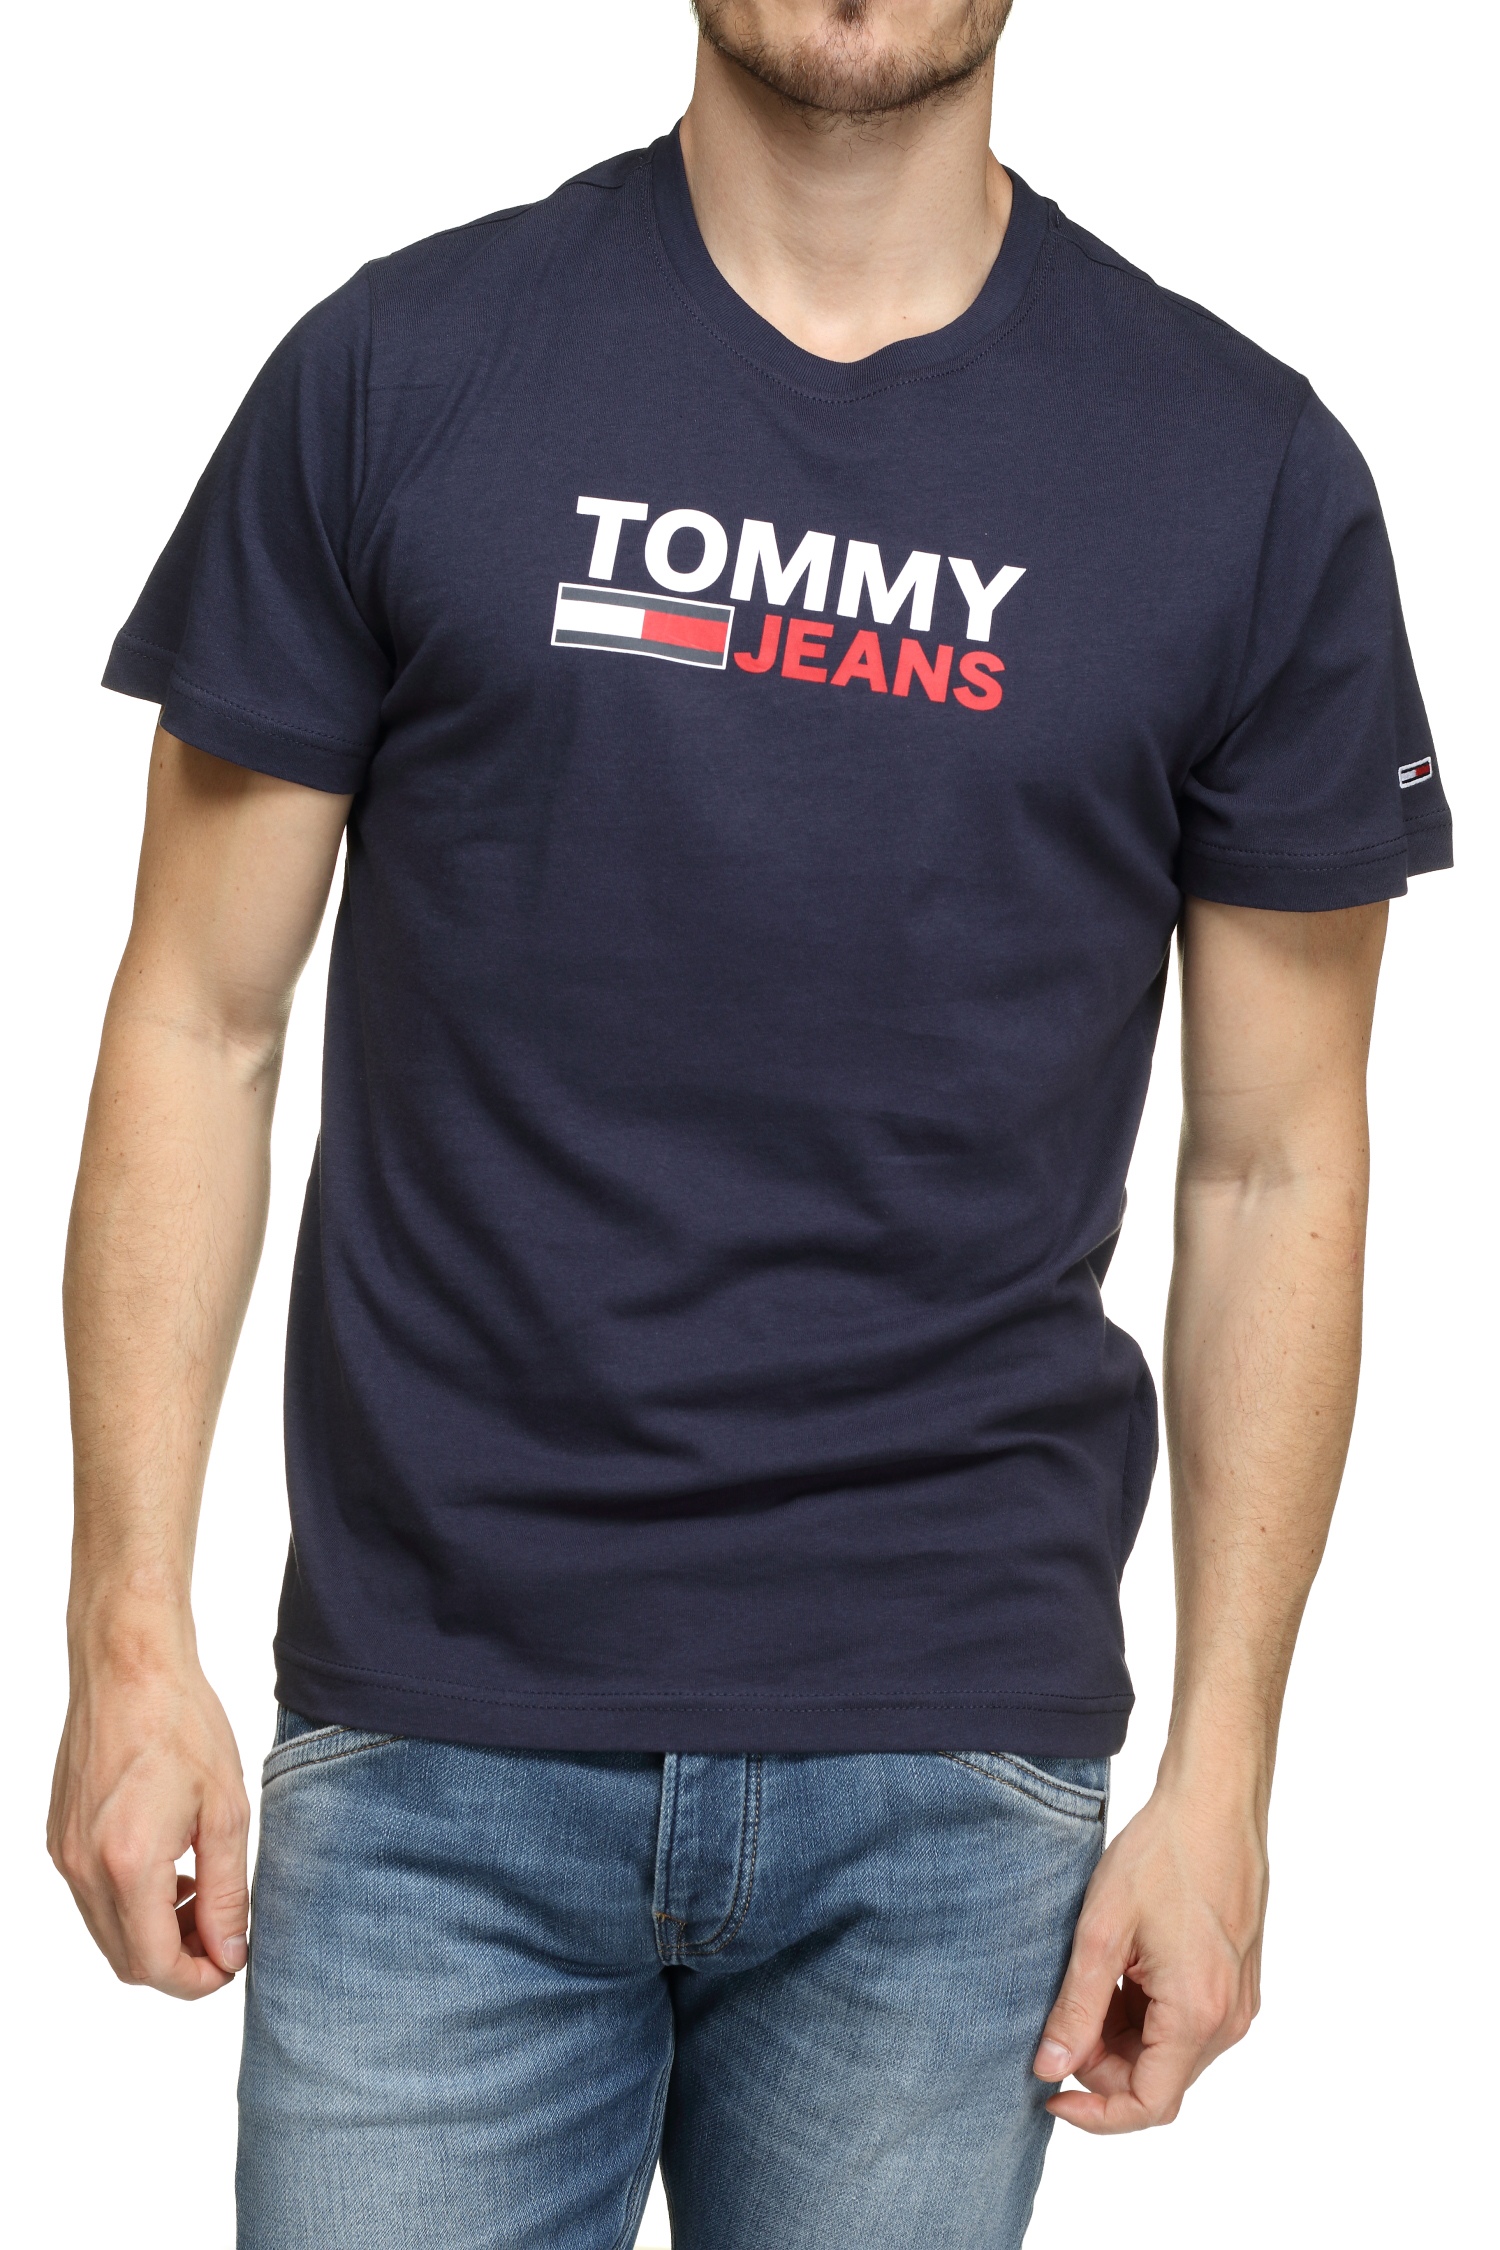 https://www.leadermode.com/223519/tommy-jeans-dm0dm15379-tjm-corp-logo-c87-twilight-navy.jpg